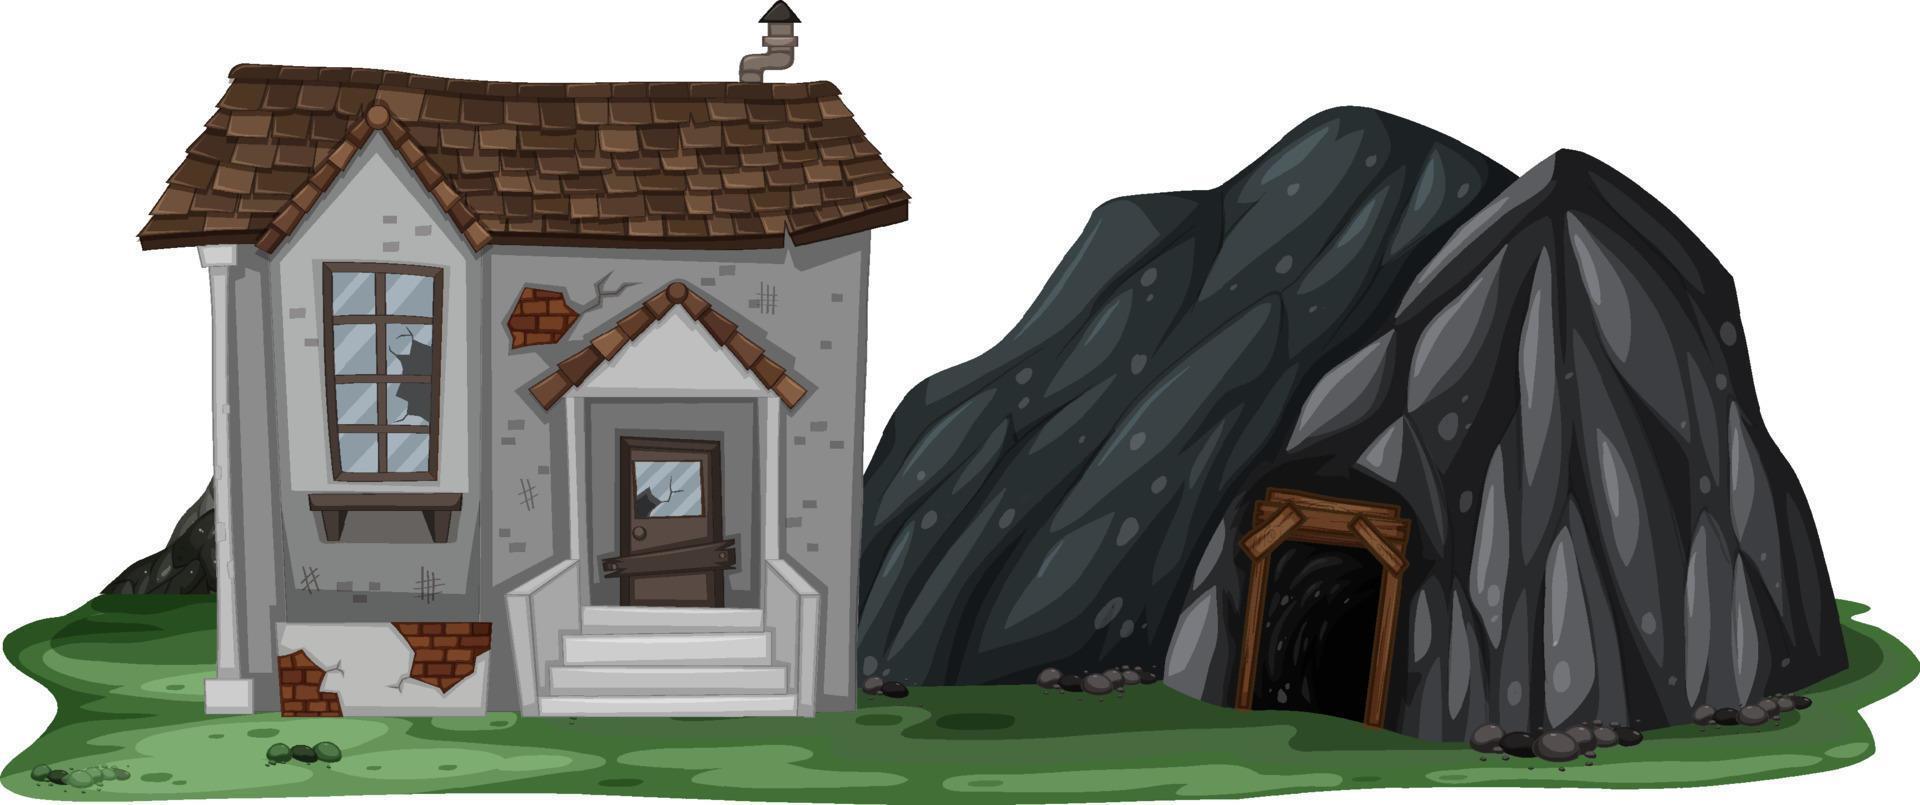 Una casa abandonada con una cueva de roca sobre fondo blanco. vector